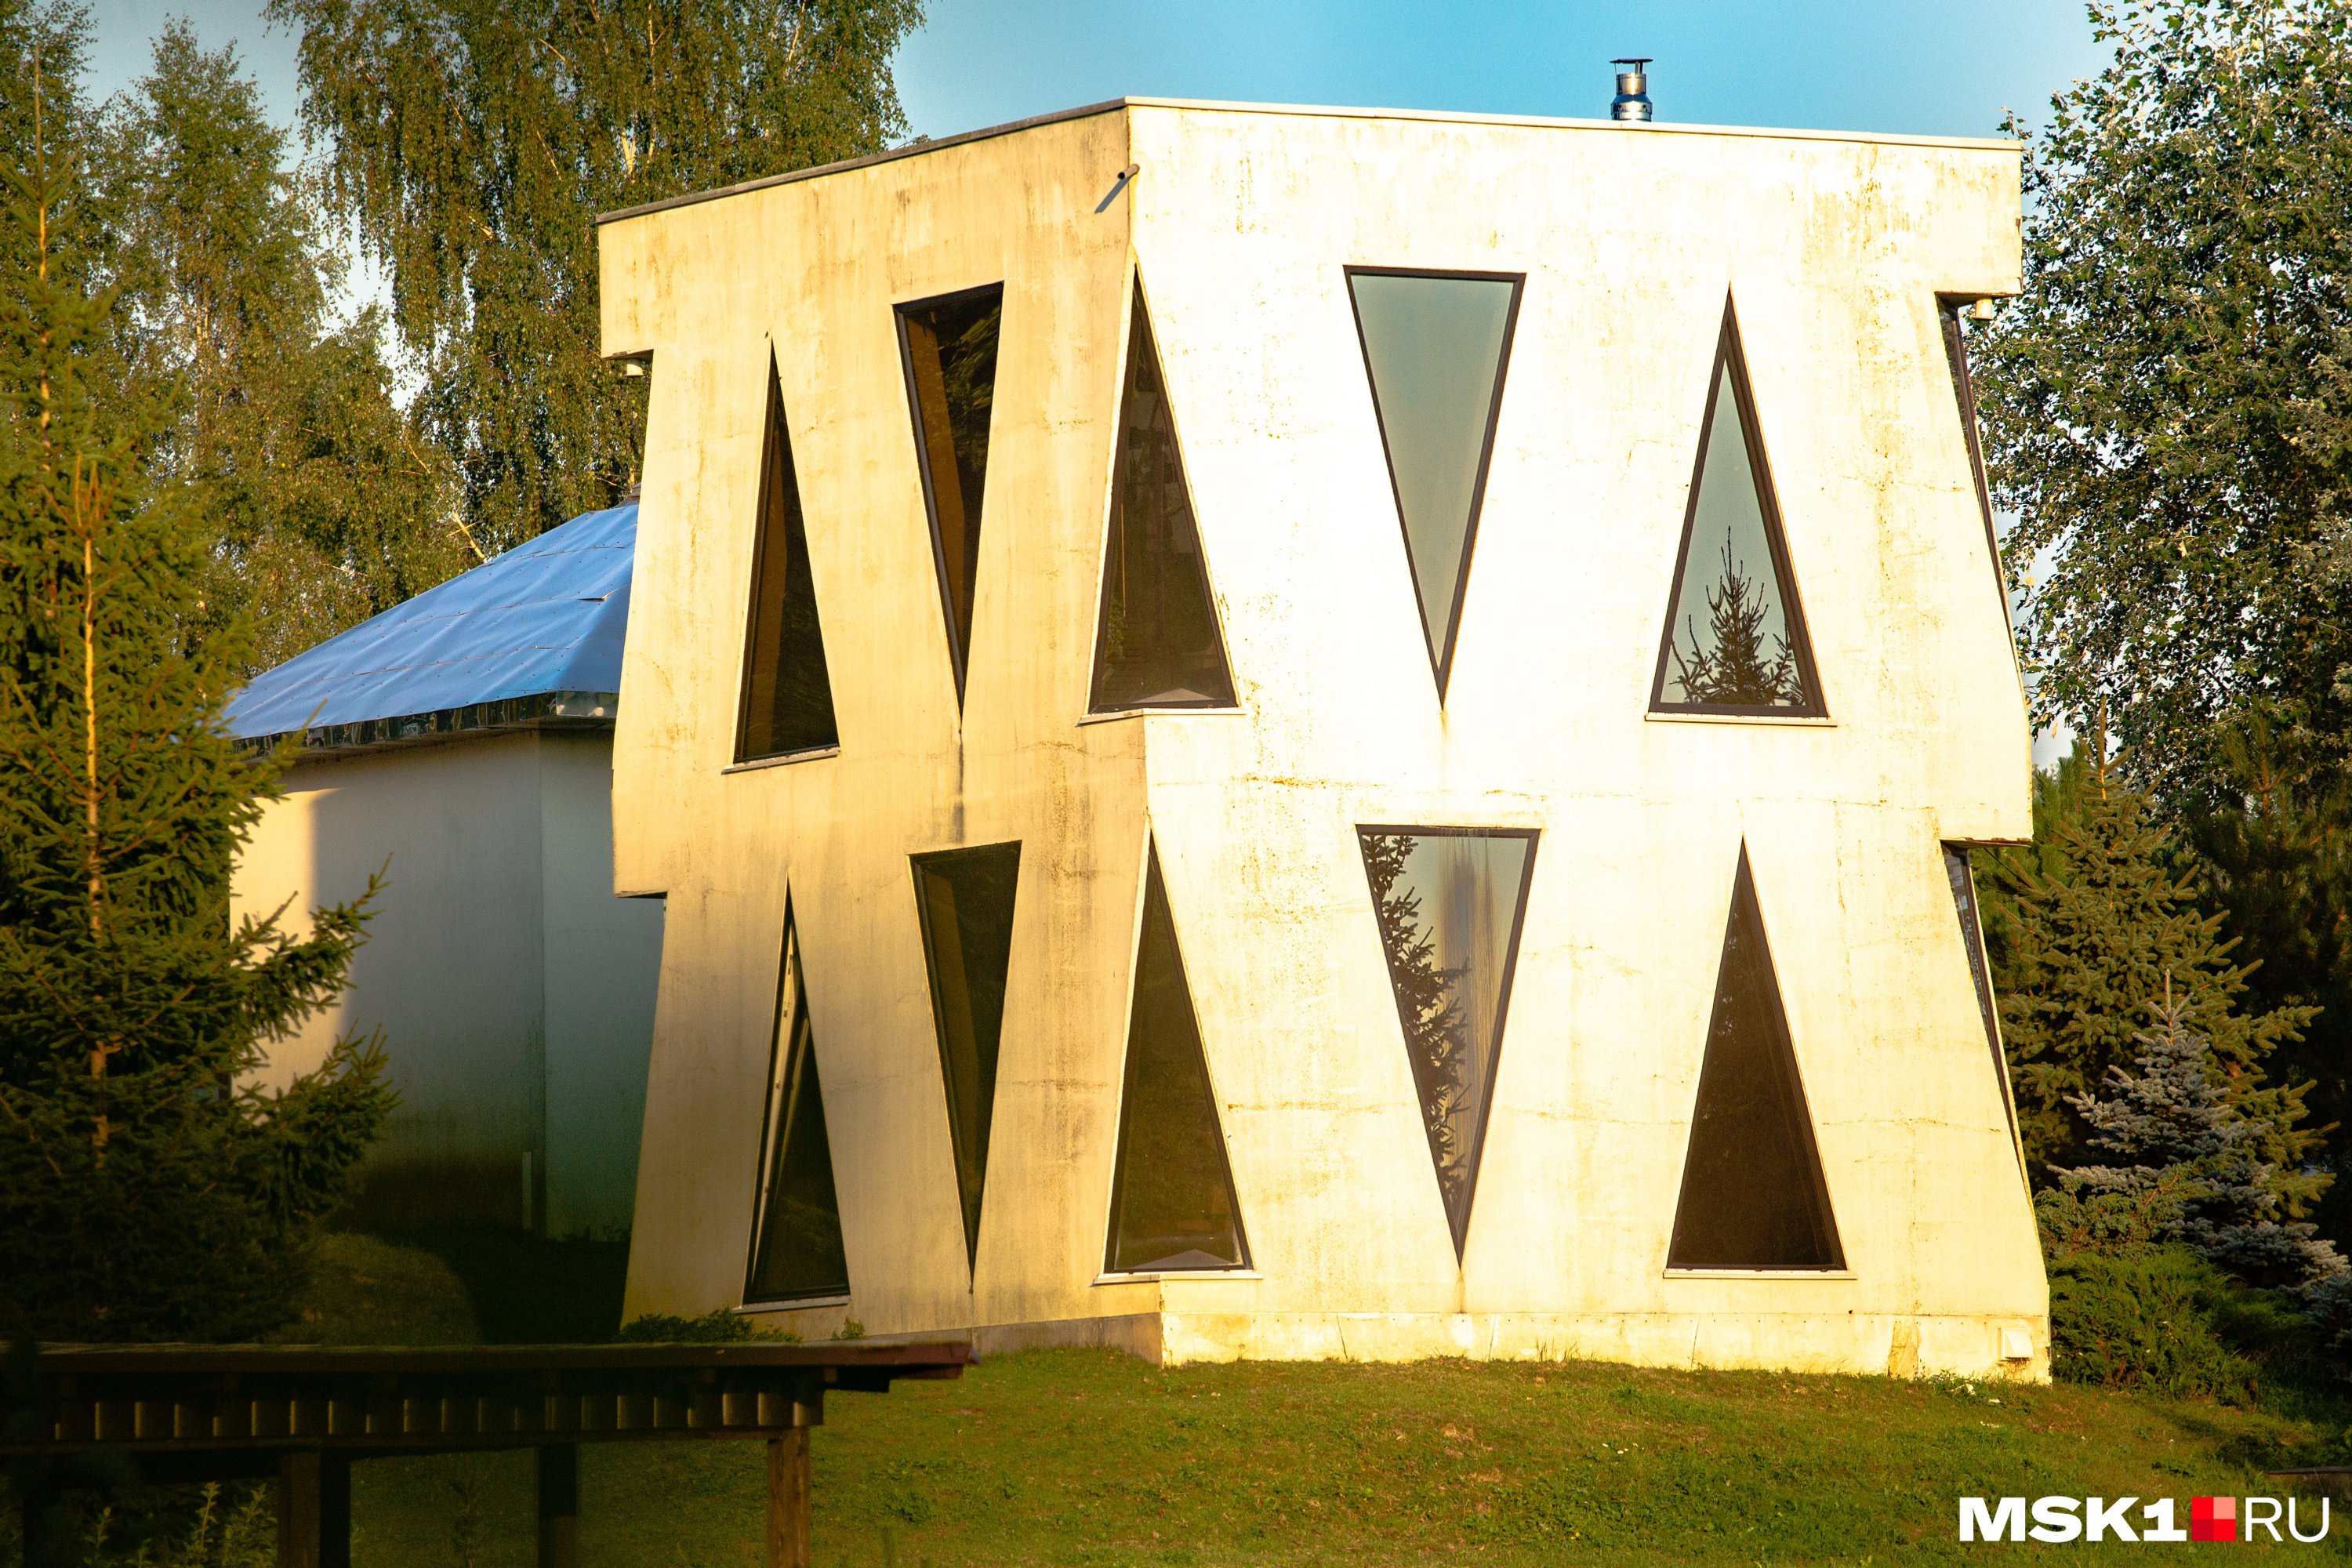 Дом выполнен в виде куба. Его спроектировал муж Чичериной Сухраб Раджабов